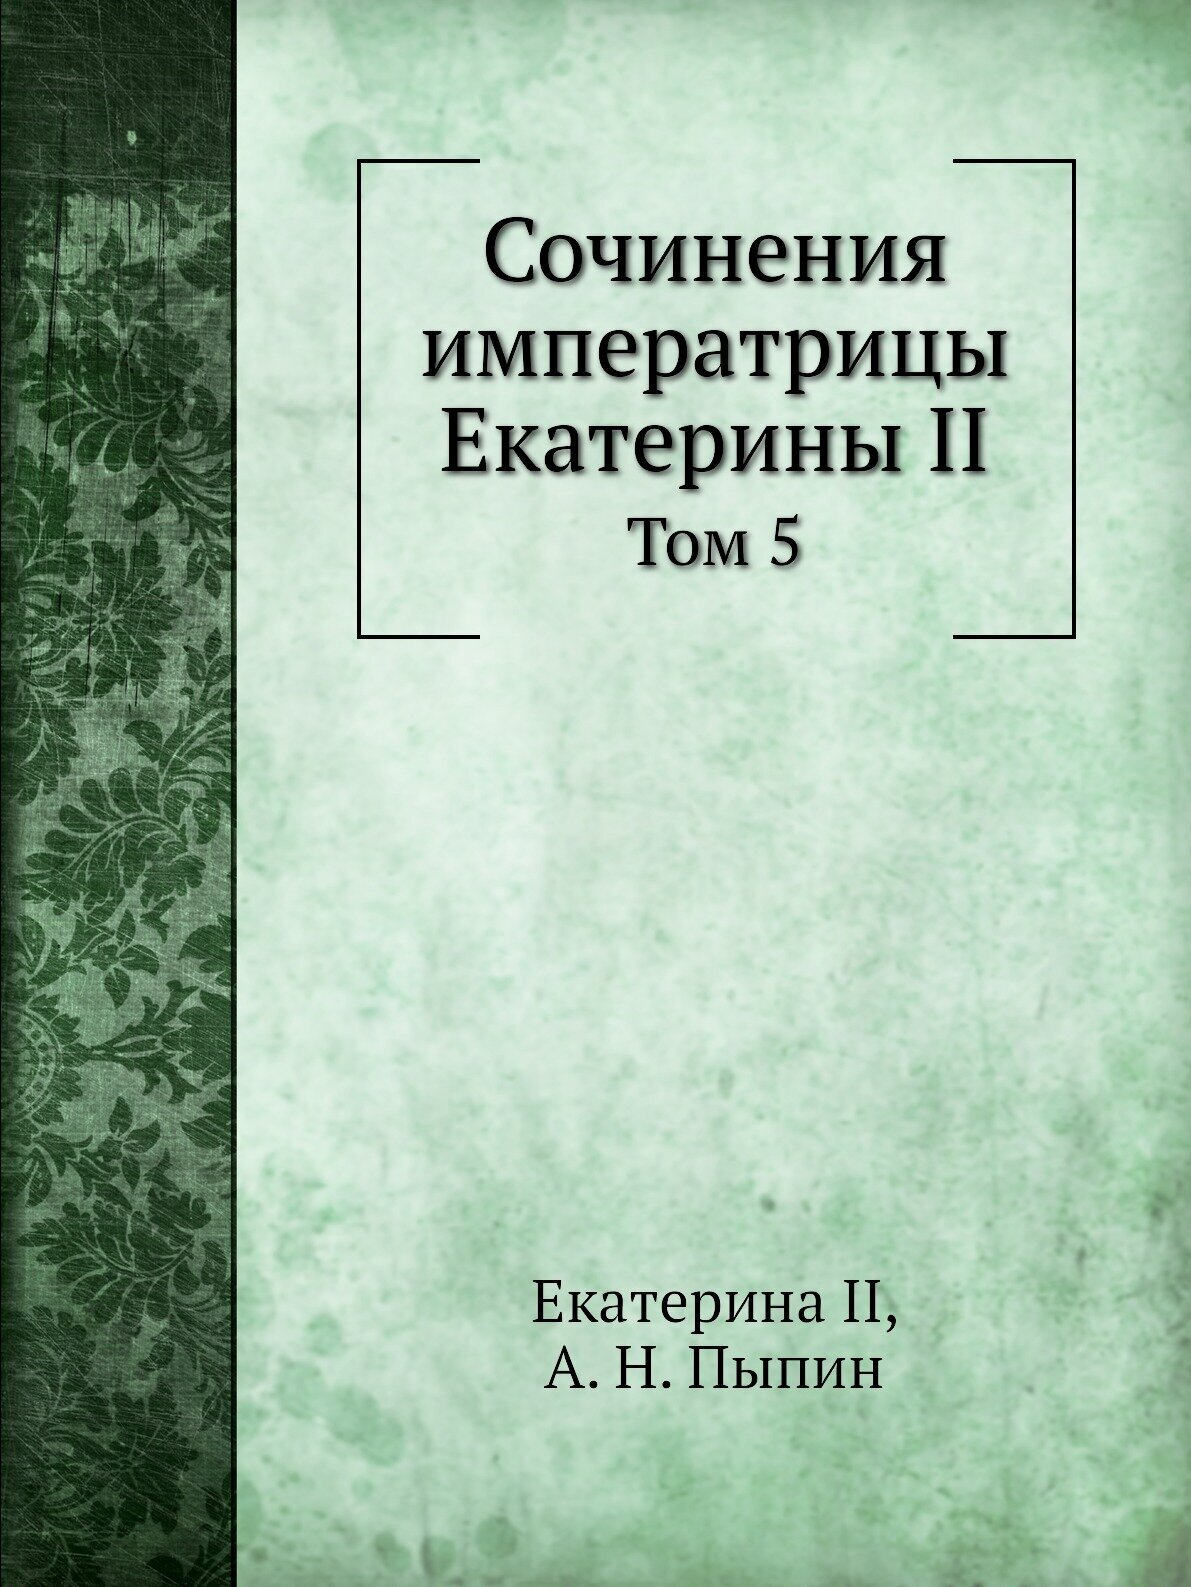 Сочинения императрицы Екатерины II. Том 5